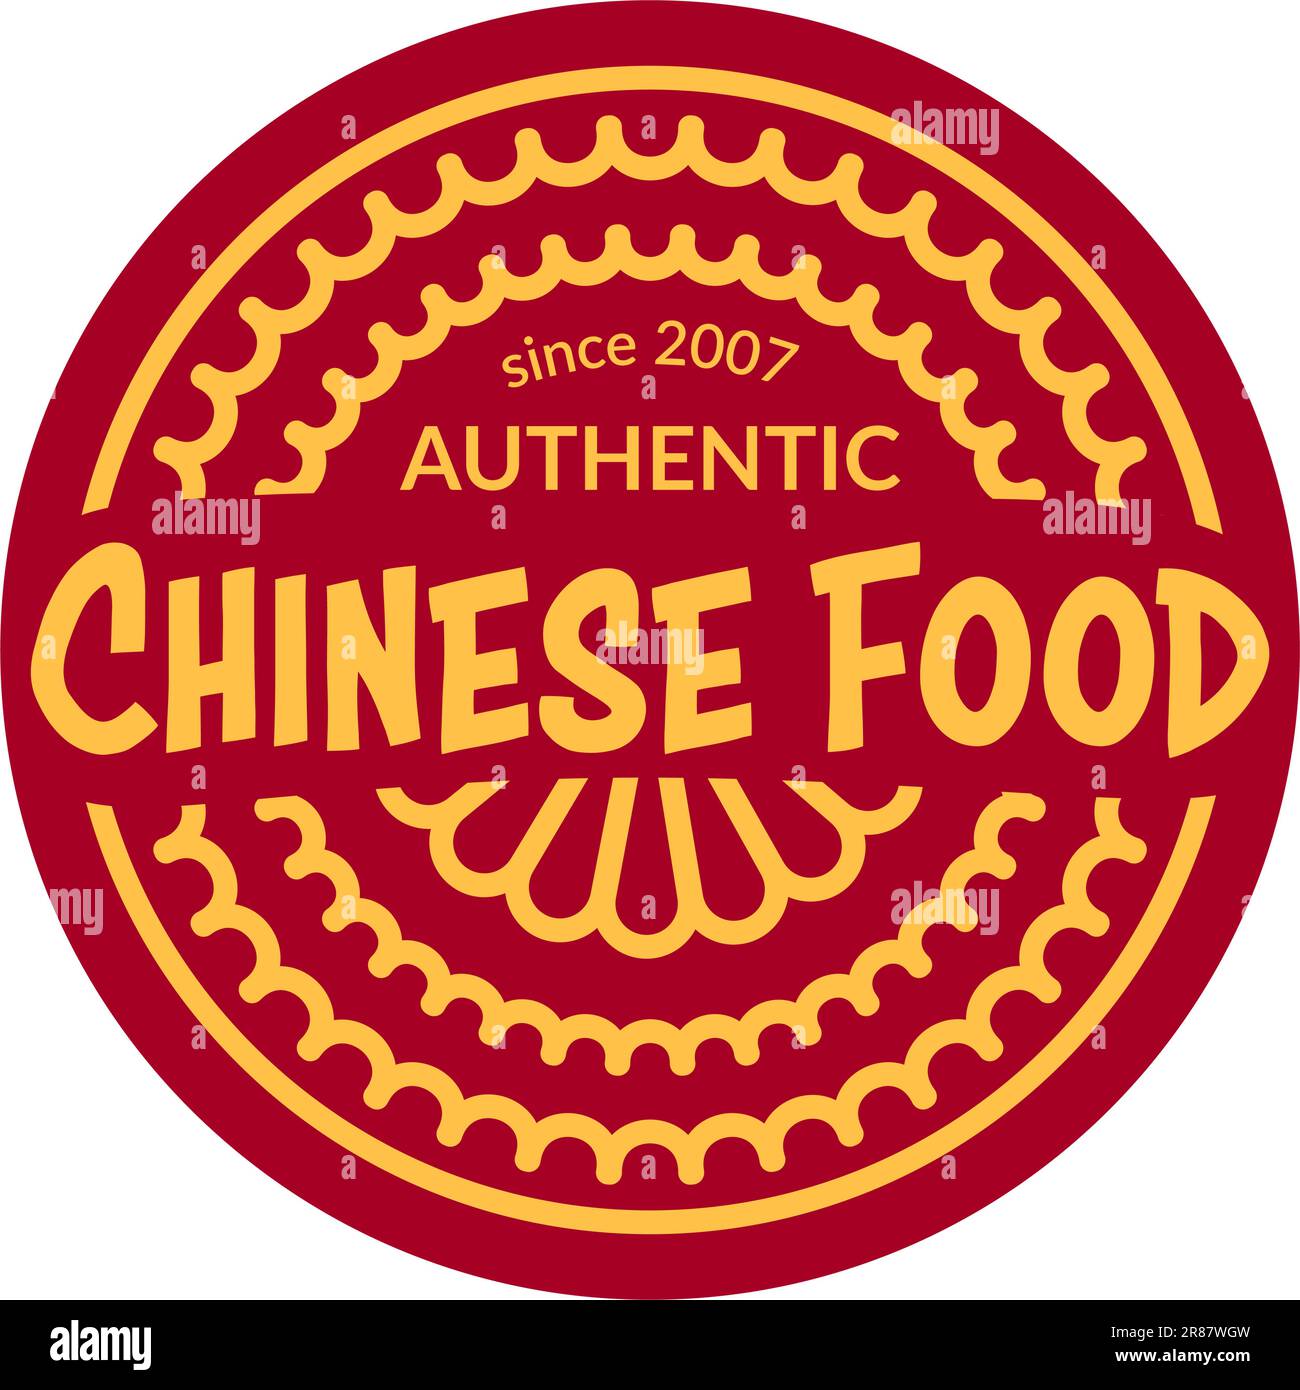 Leckere authentische Gerichte und Rezepte aus dem Orient. Chinesisches Essen seit 2007. Logo des Geschäfts oder Restaurants. Werbebanner oder -Label, Stock Vektor